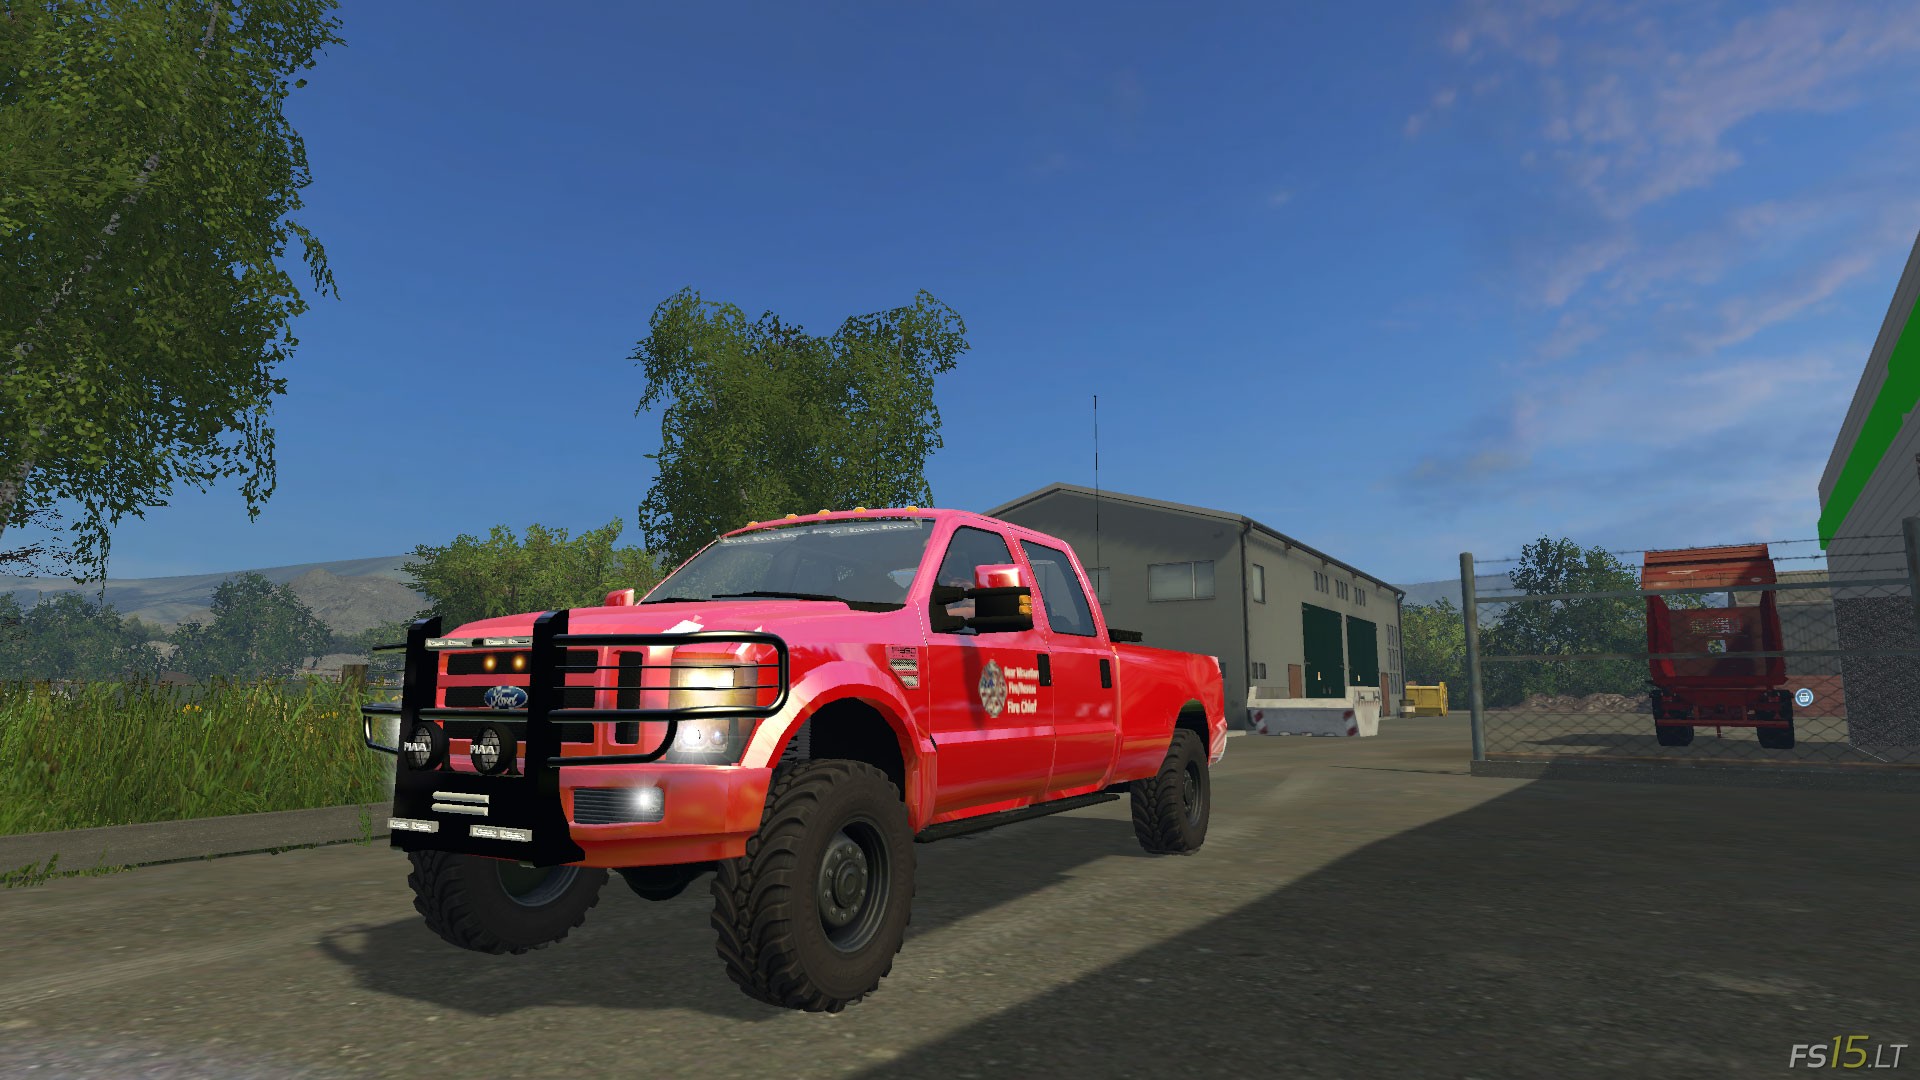 Fire Fs15lt Farming Simulator 2015 Fs 15 Mods